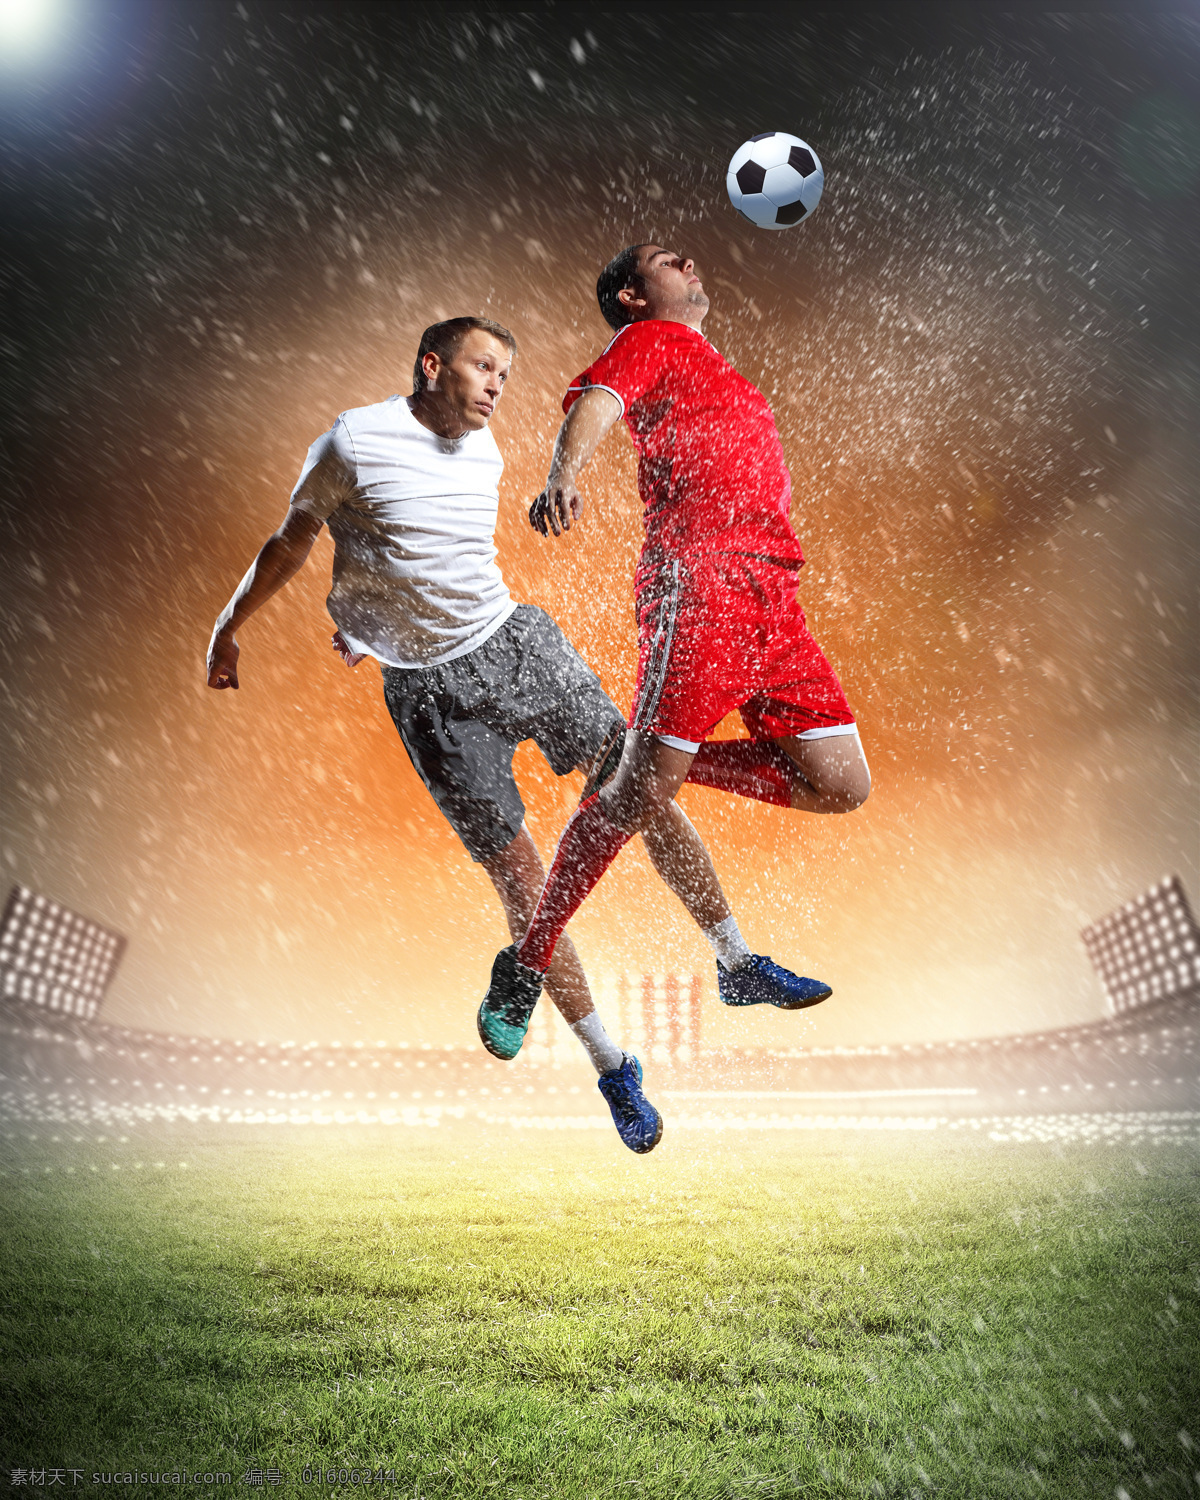 足球比赛 运动员 足球运动员 体育运动员 踢球 体育运动 体育项目 生活百科